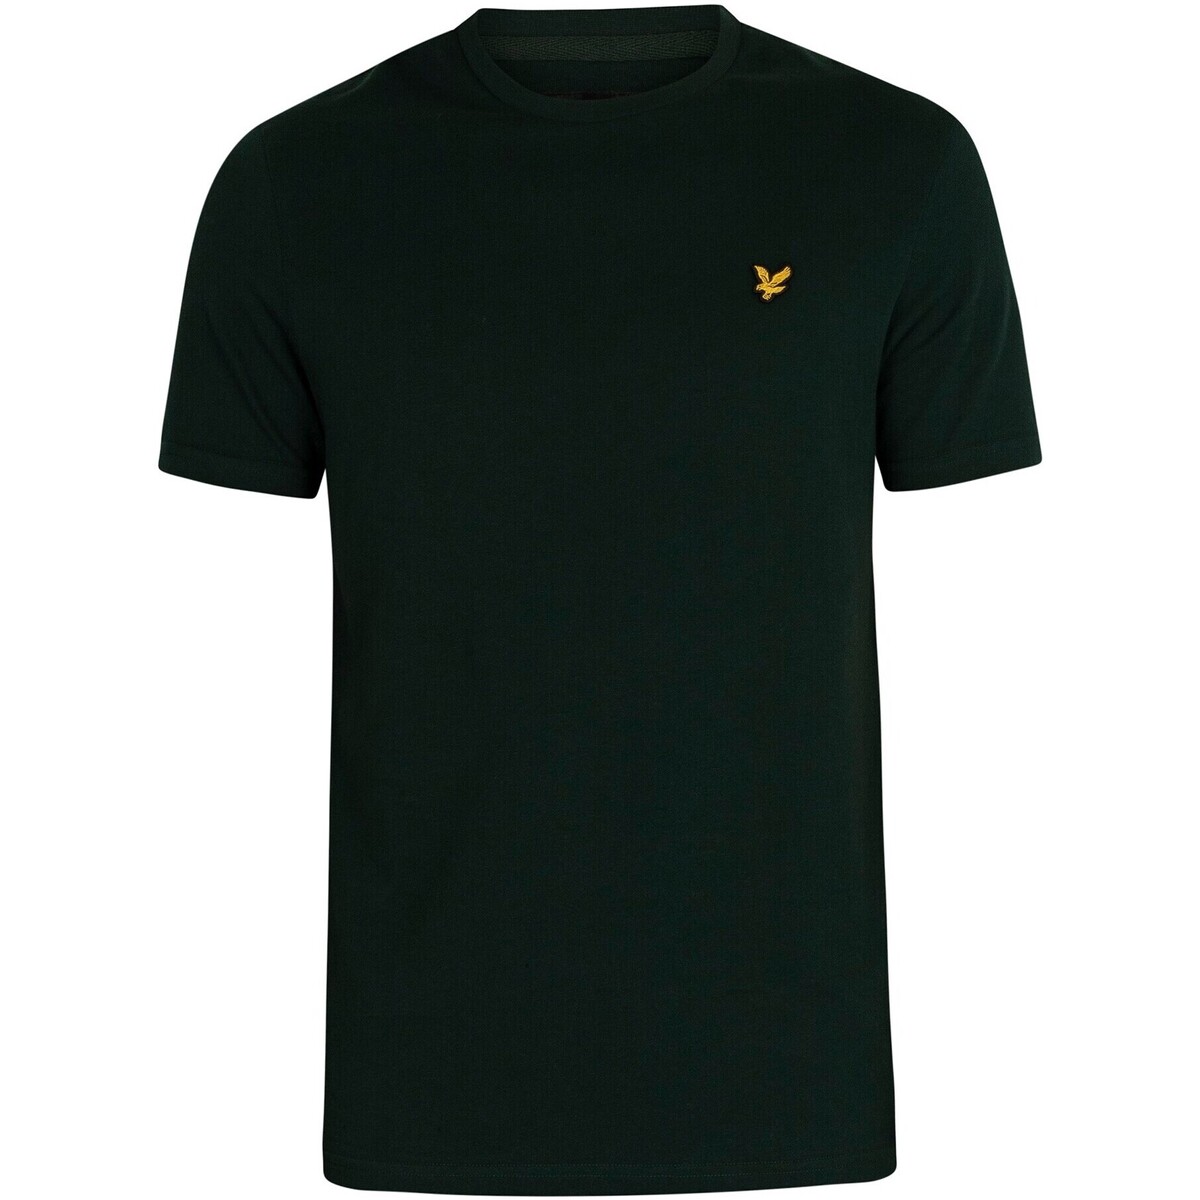 Vêtements Homme track jackets and more T-shirt Philosophy de logo Vert